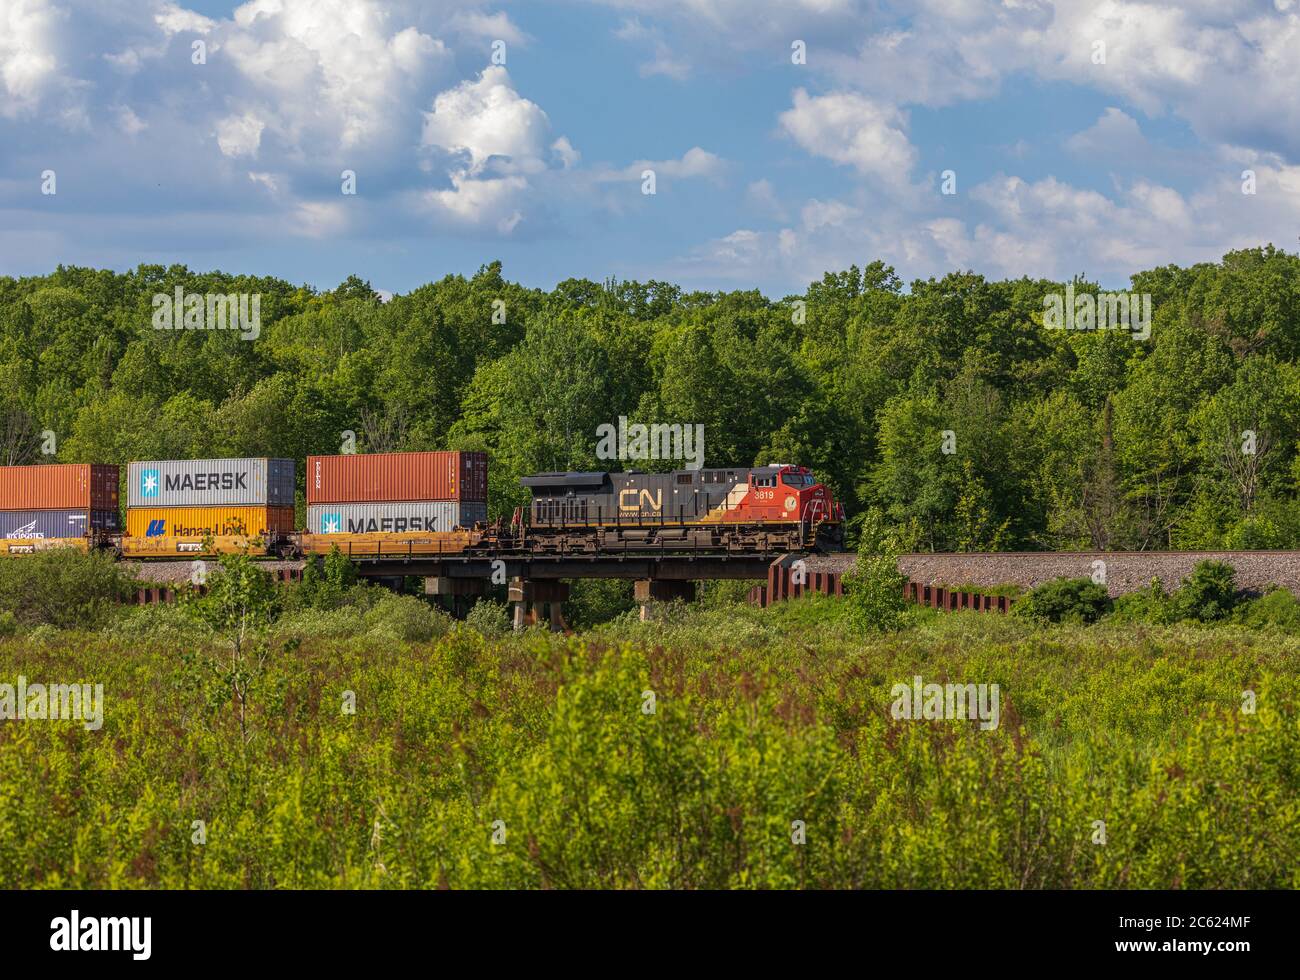 Train de marchandises du CN traversant une communauté rurale dans le nord du Wisconsin. Banque D'Images